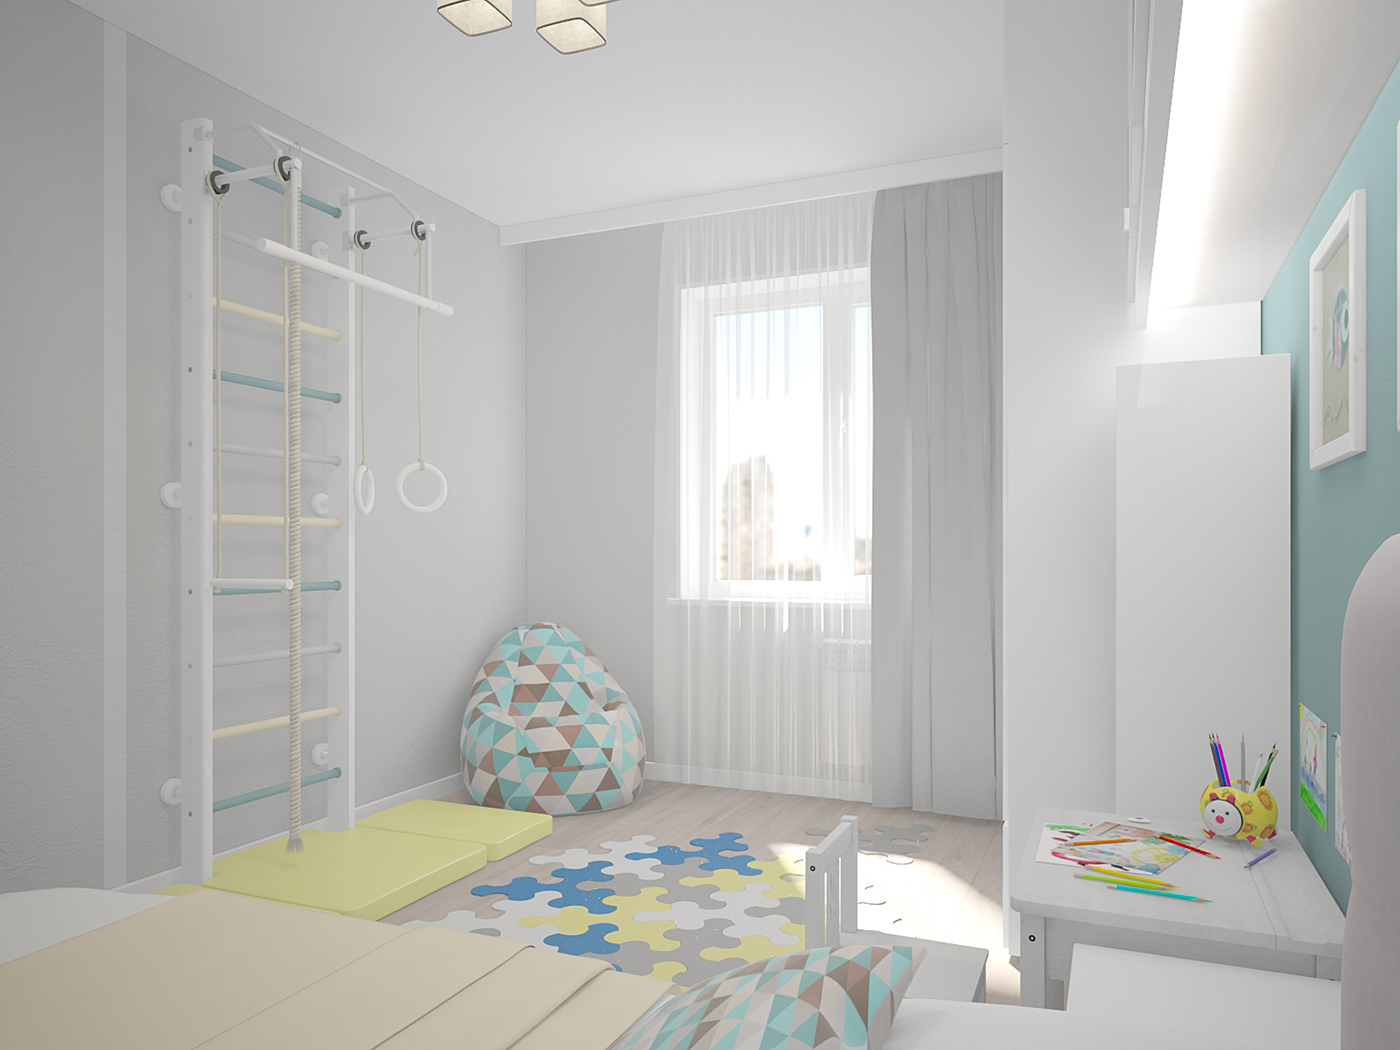 children's room light Interior interior design  design детская светлая детская дизайн интерьер